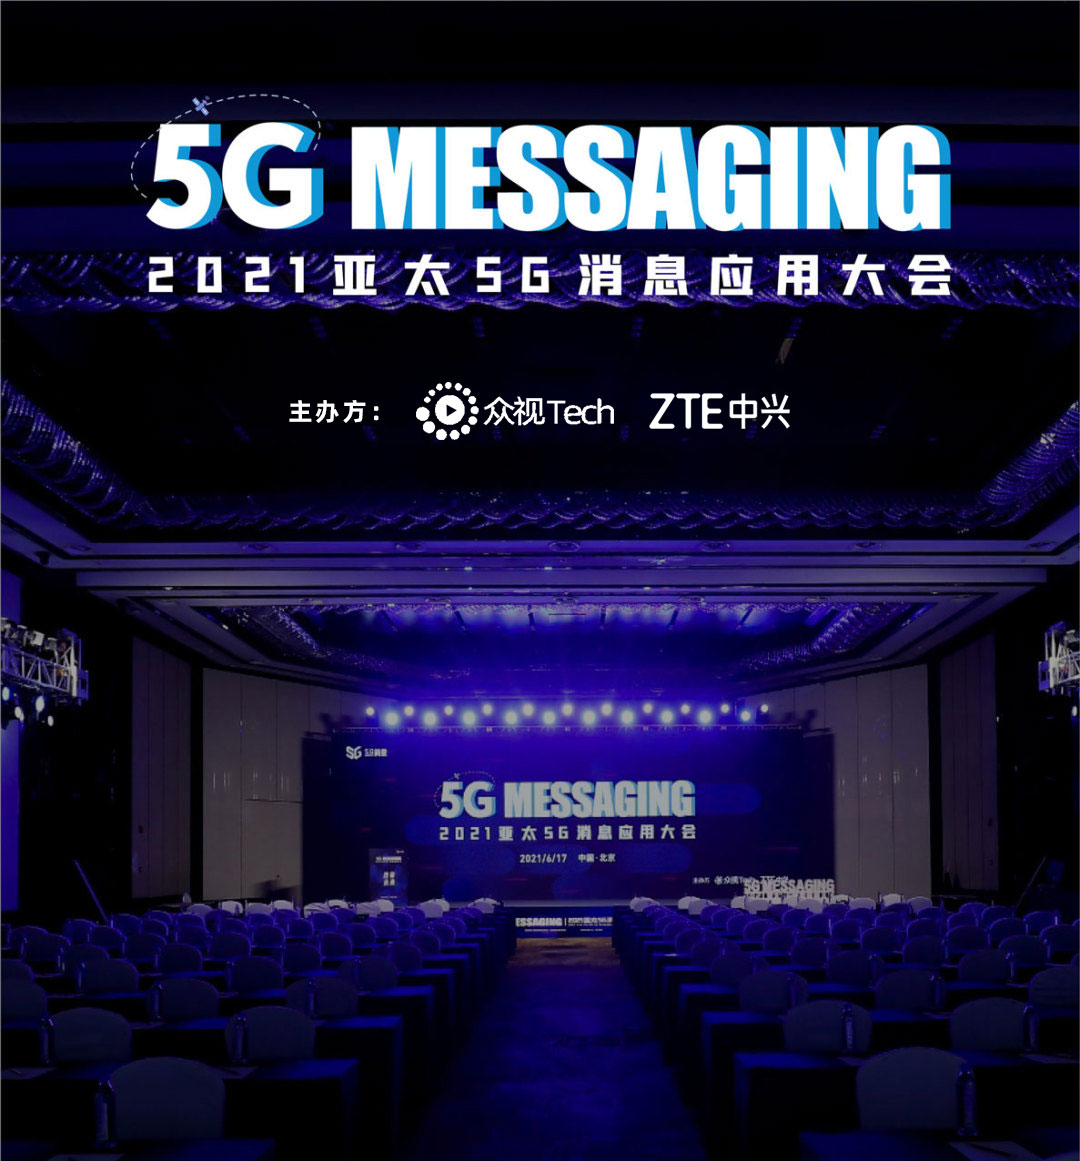 2021亚太5G消息应用大会 ·上海站_门票优惠_活动家官网报名